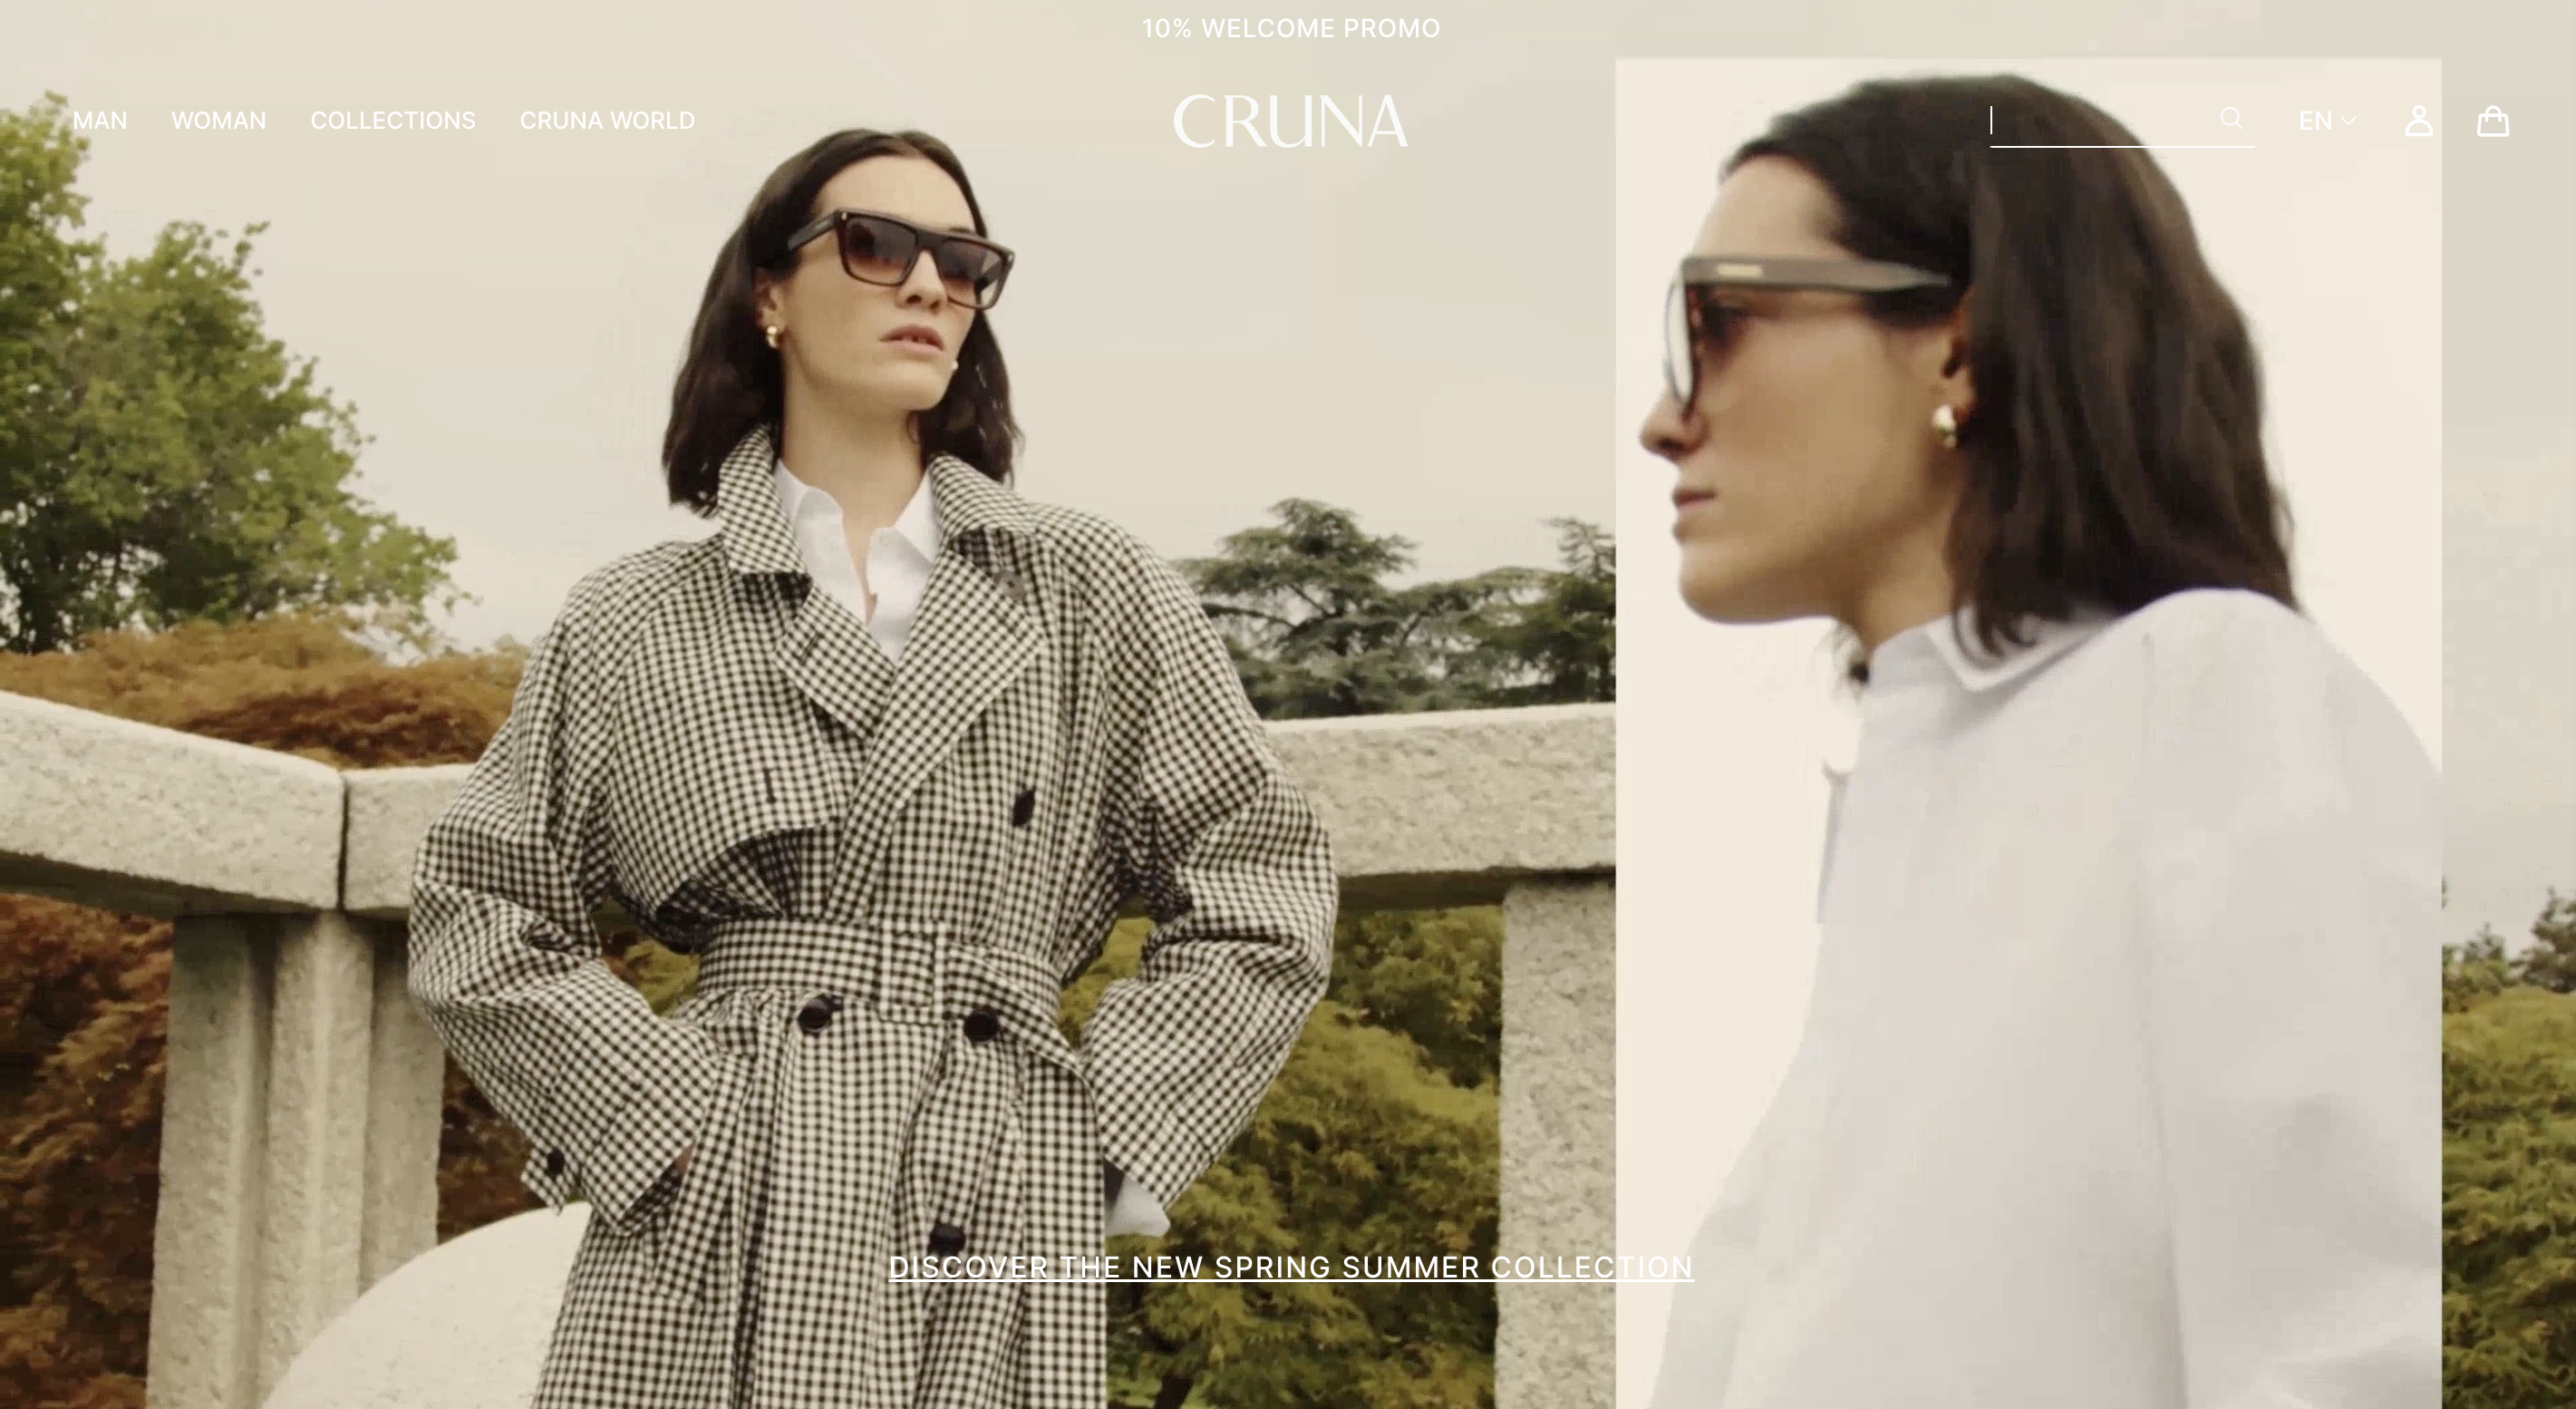 意大利服装品牌 Cruna 过去一年实现45%增长，今年营业额或达600万欧元